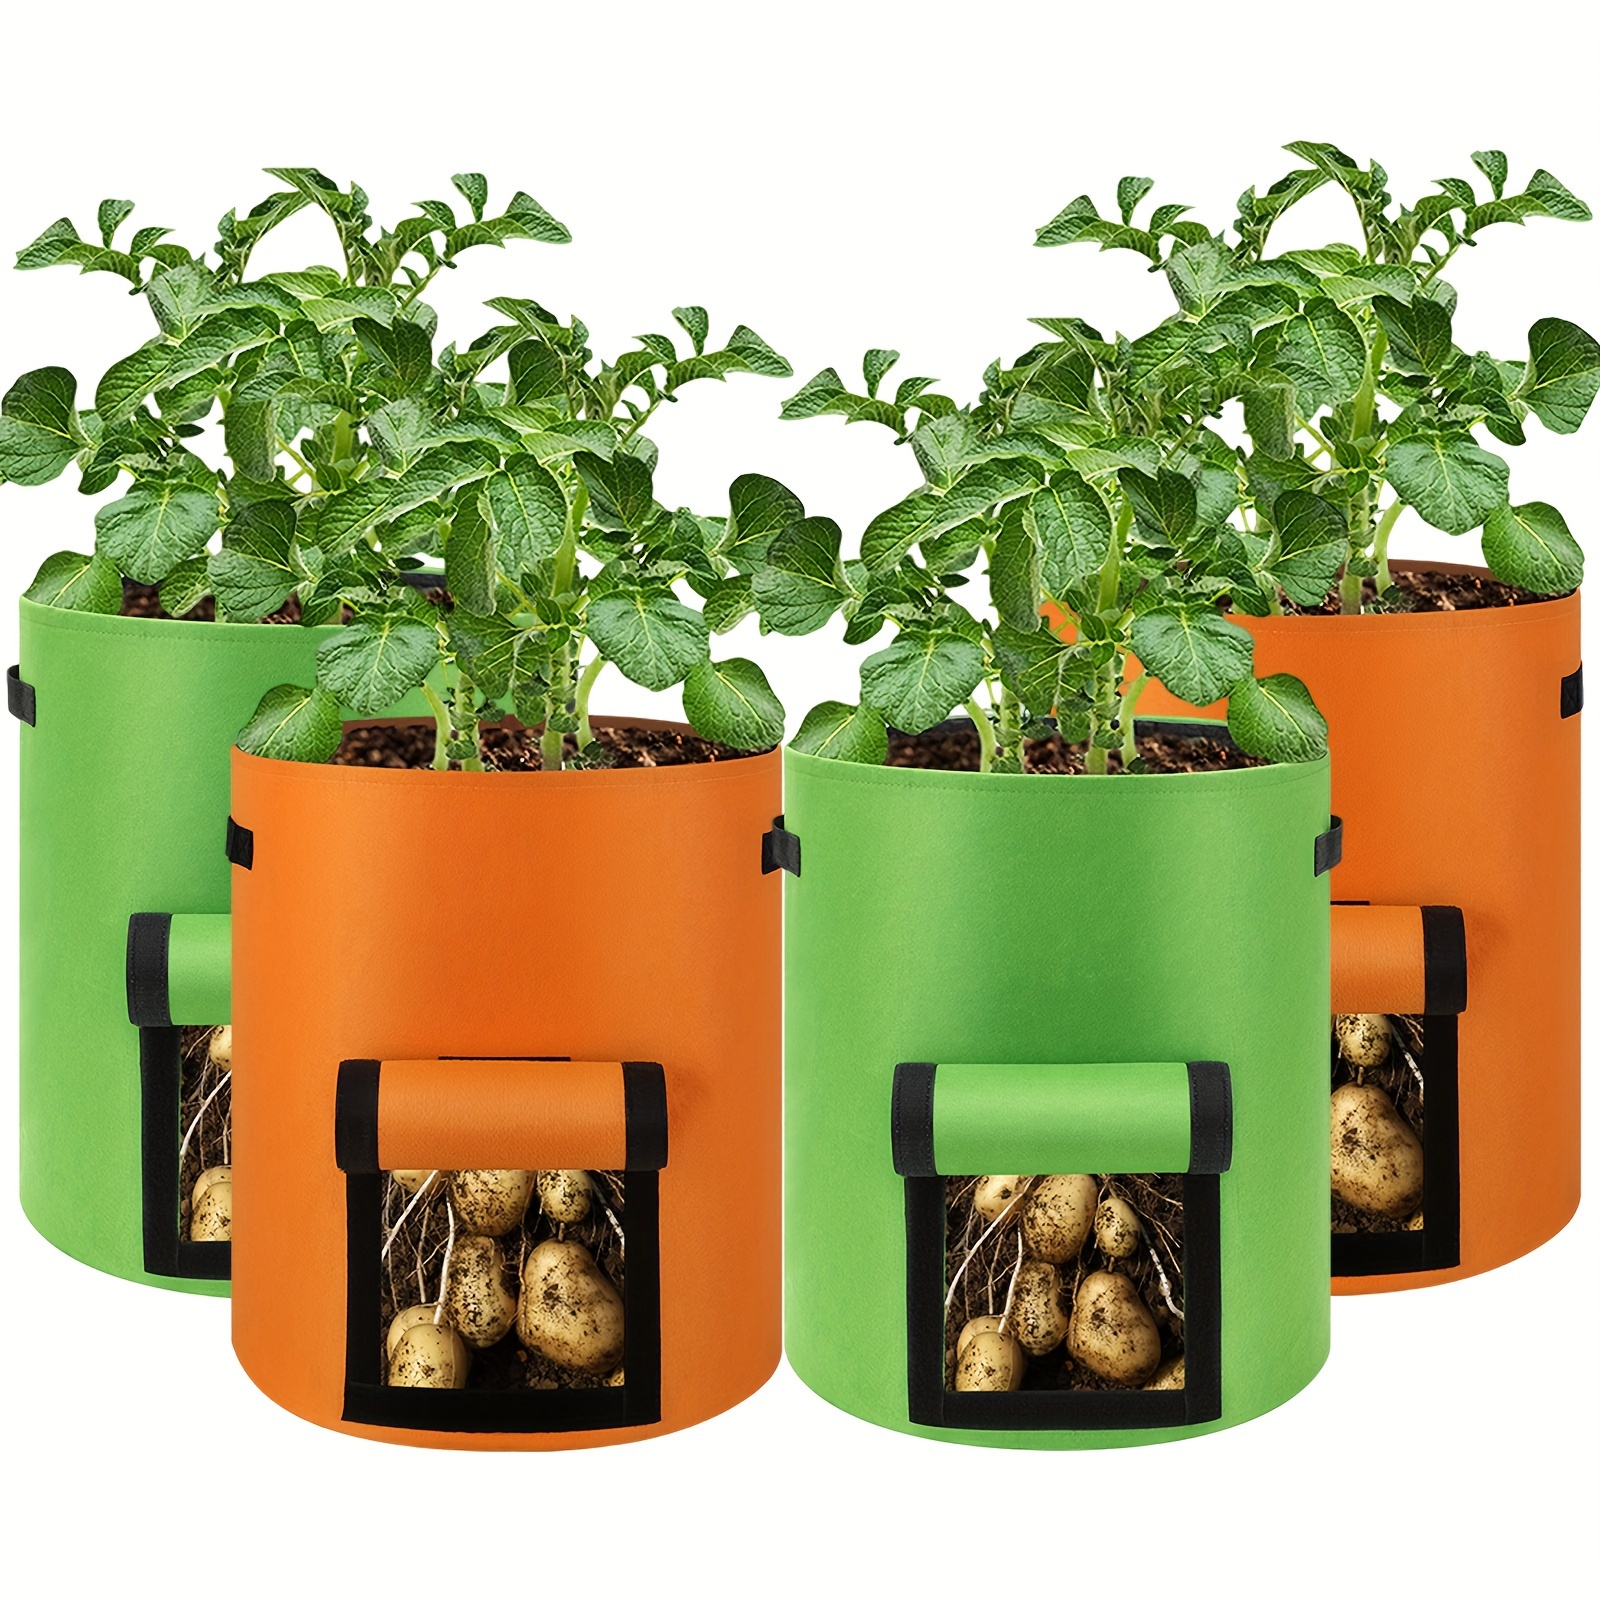 Vegetable Planting Grow Bags 3 Pack 7 Gallon Potato Grow